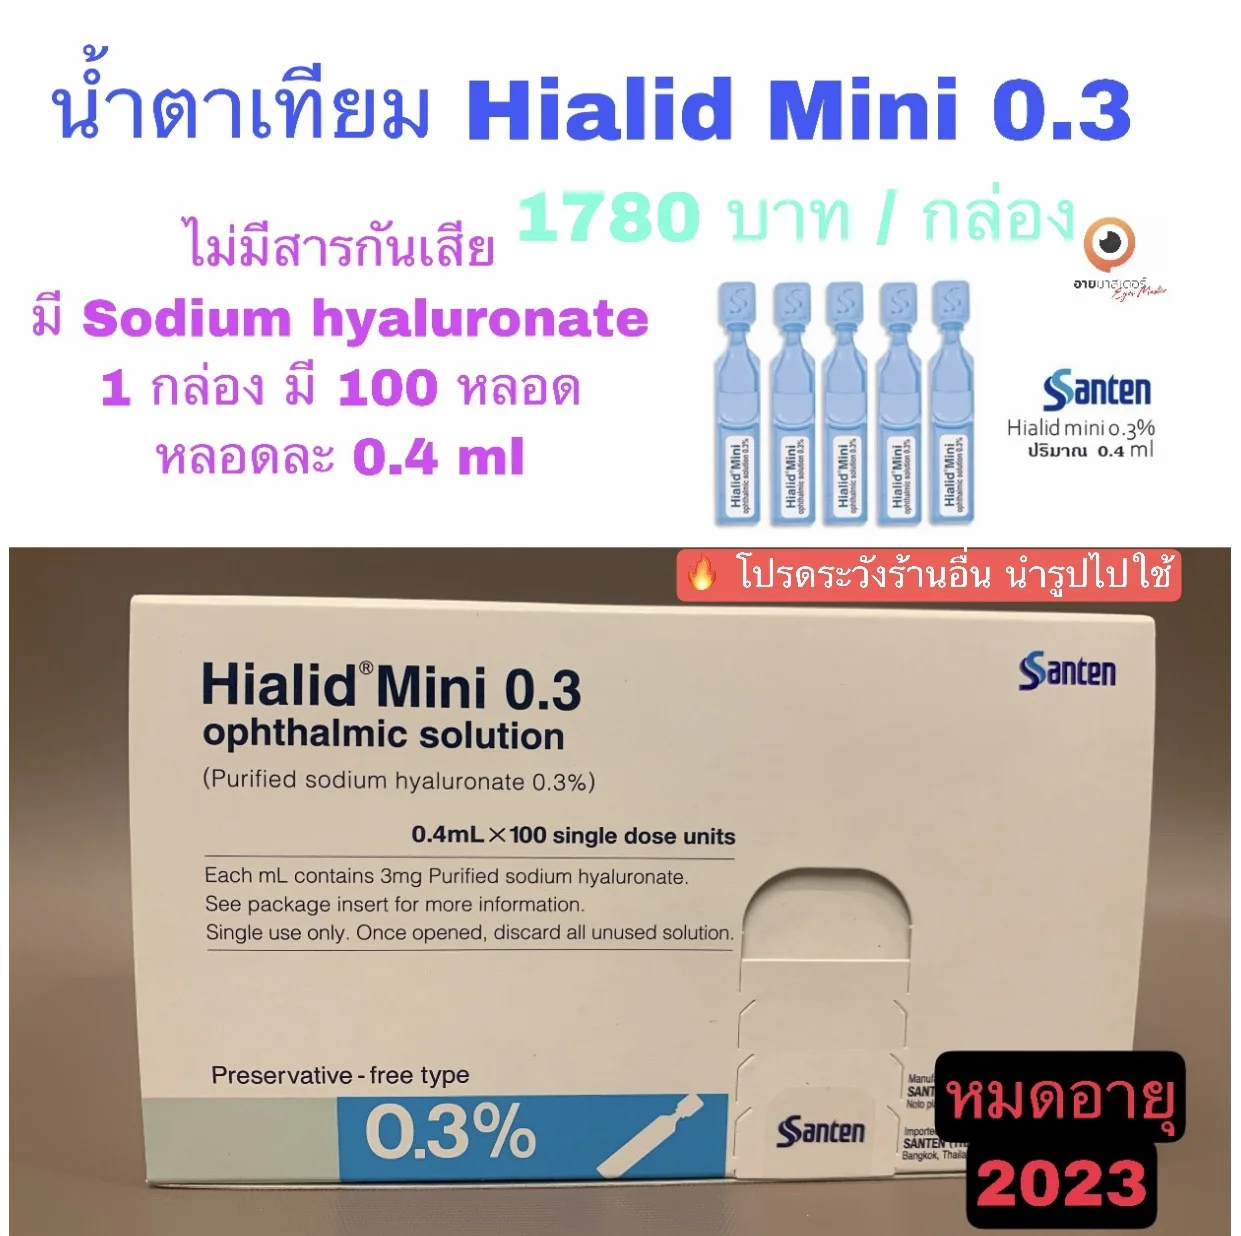 น้ำตาเทียม Hialid Mini 0.3 ชนิดรายวัน **พร้อมกล่องเก็บน้ำตาเทียม**